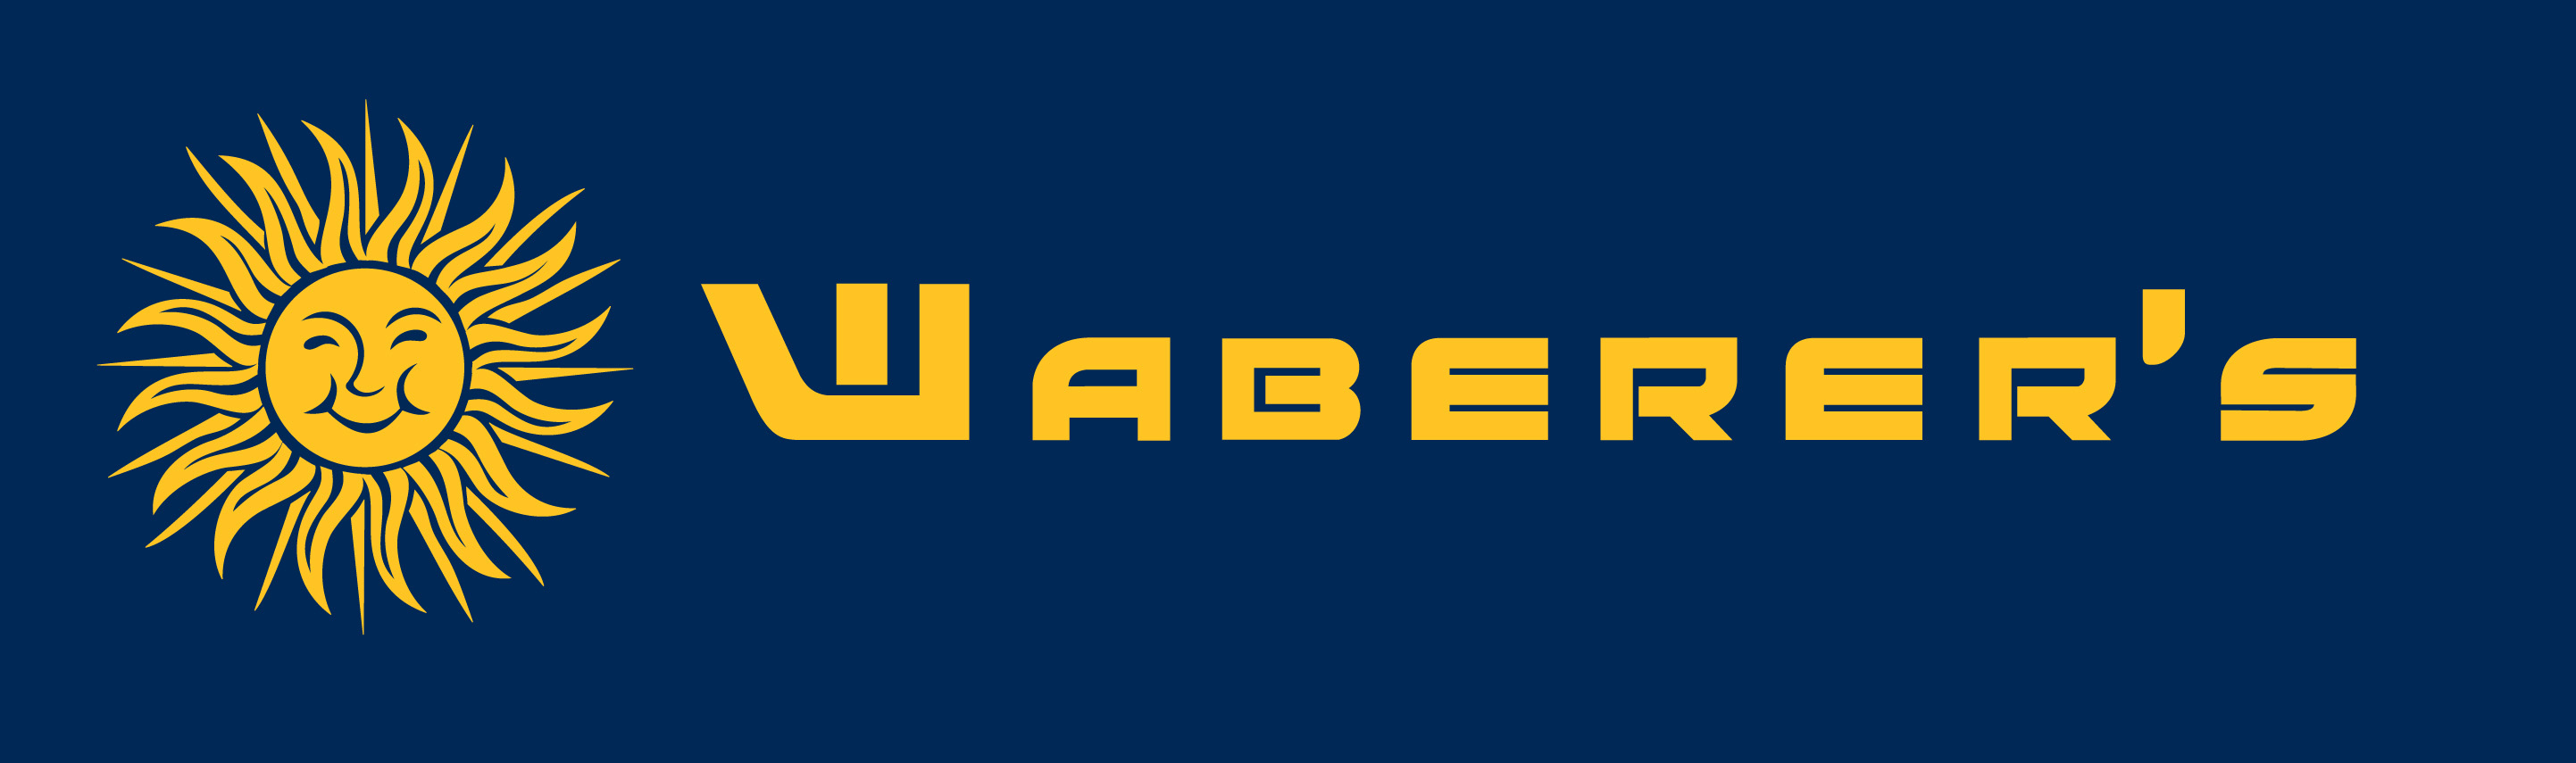 Waberers-logo_kicsi.jpg